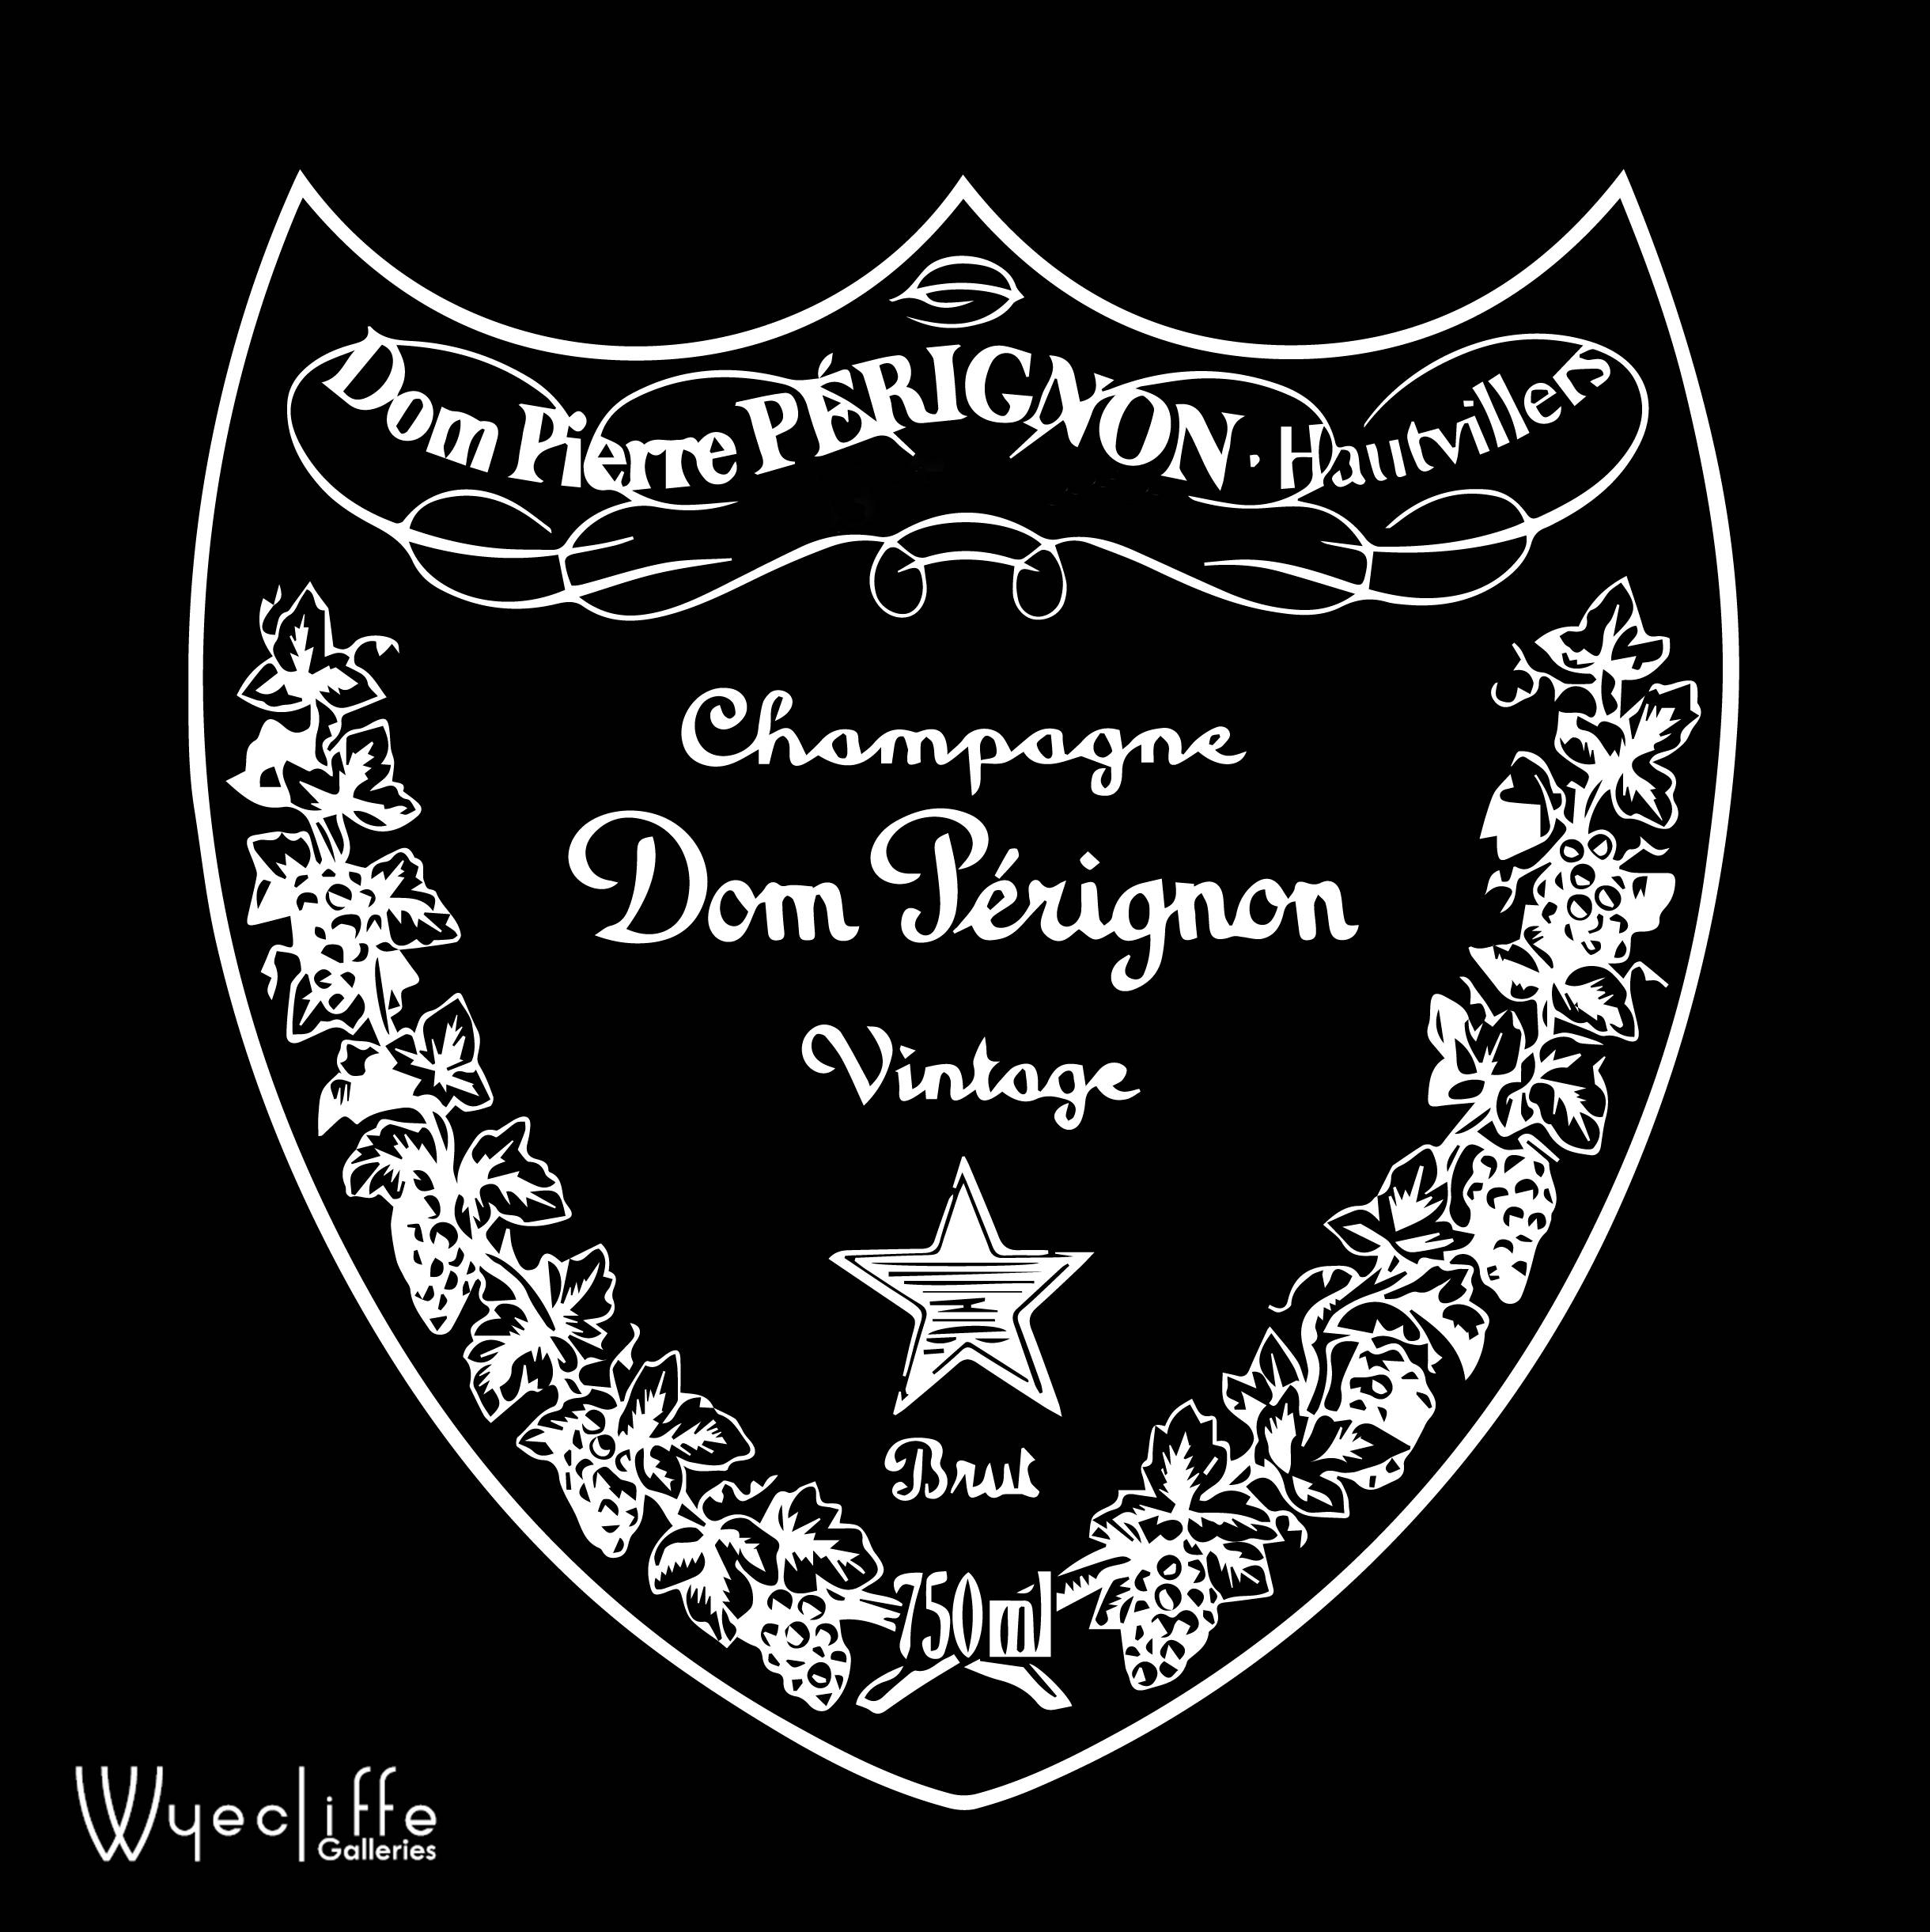 Dom Perignon Black Friday